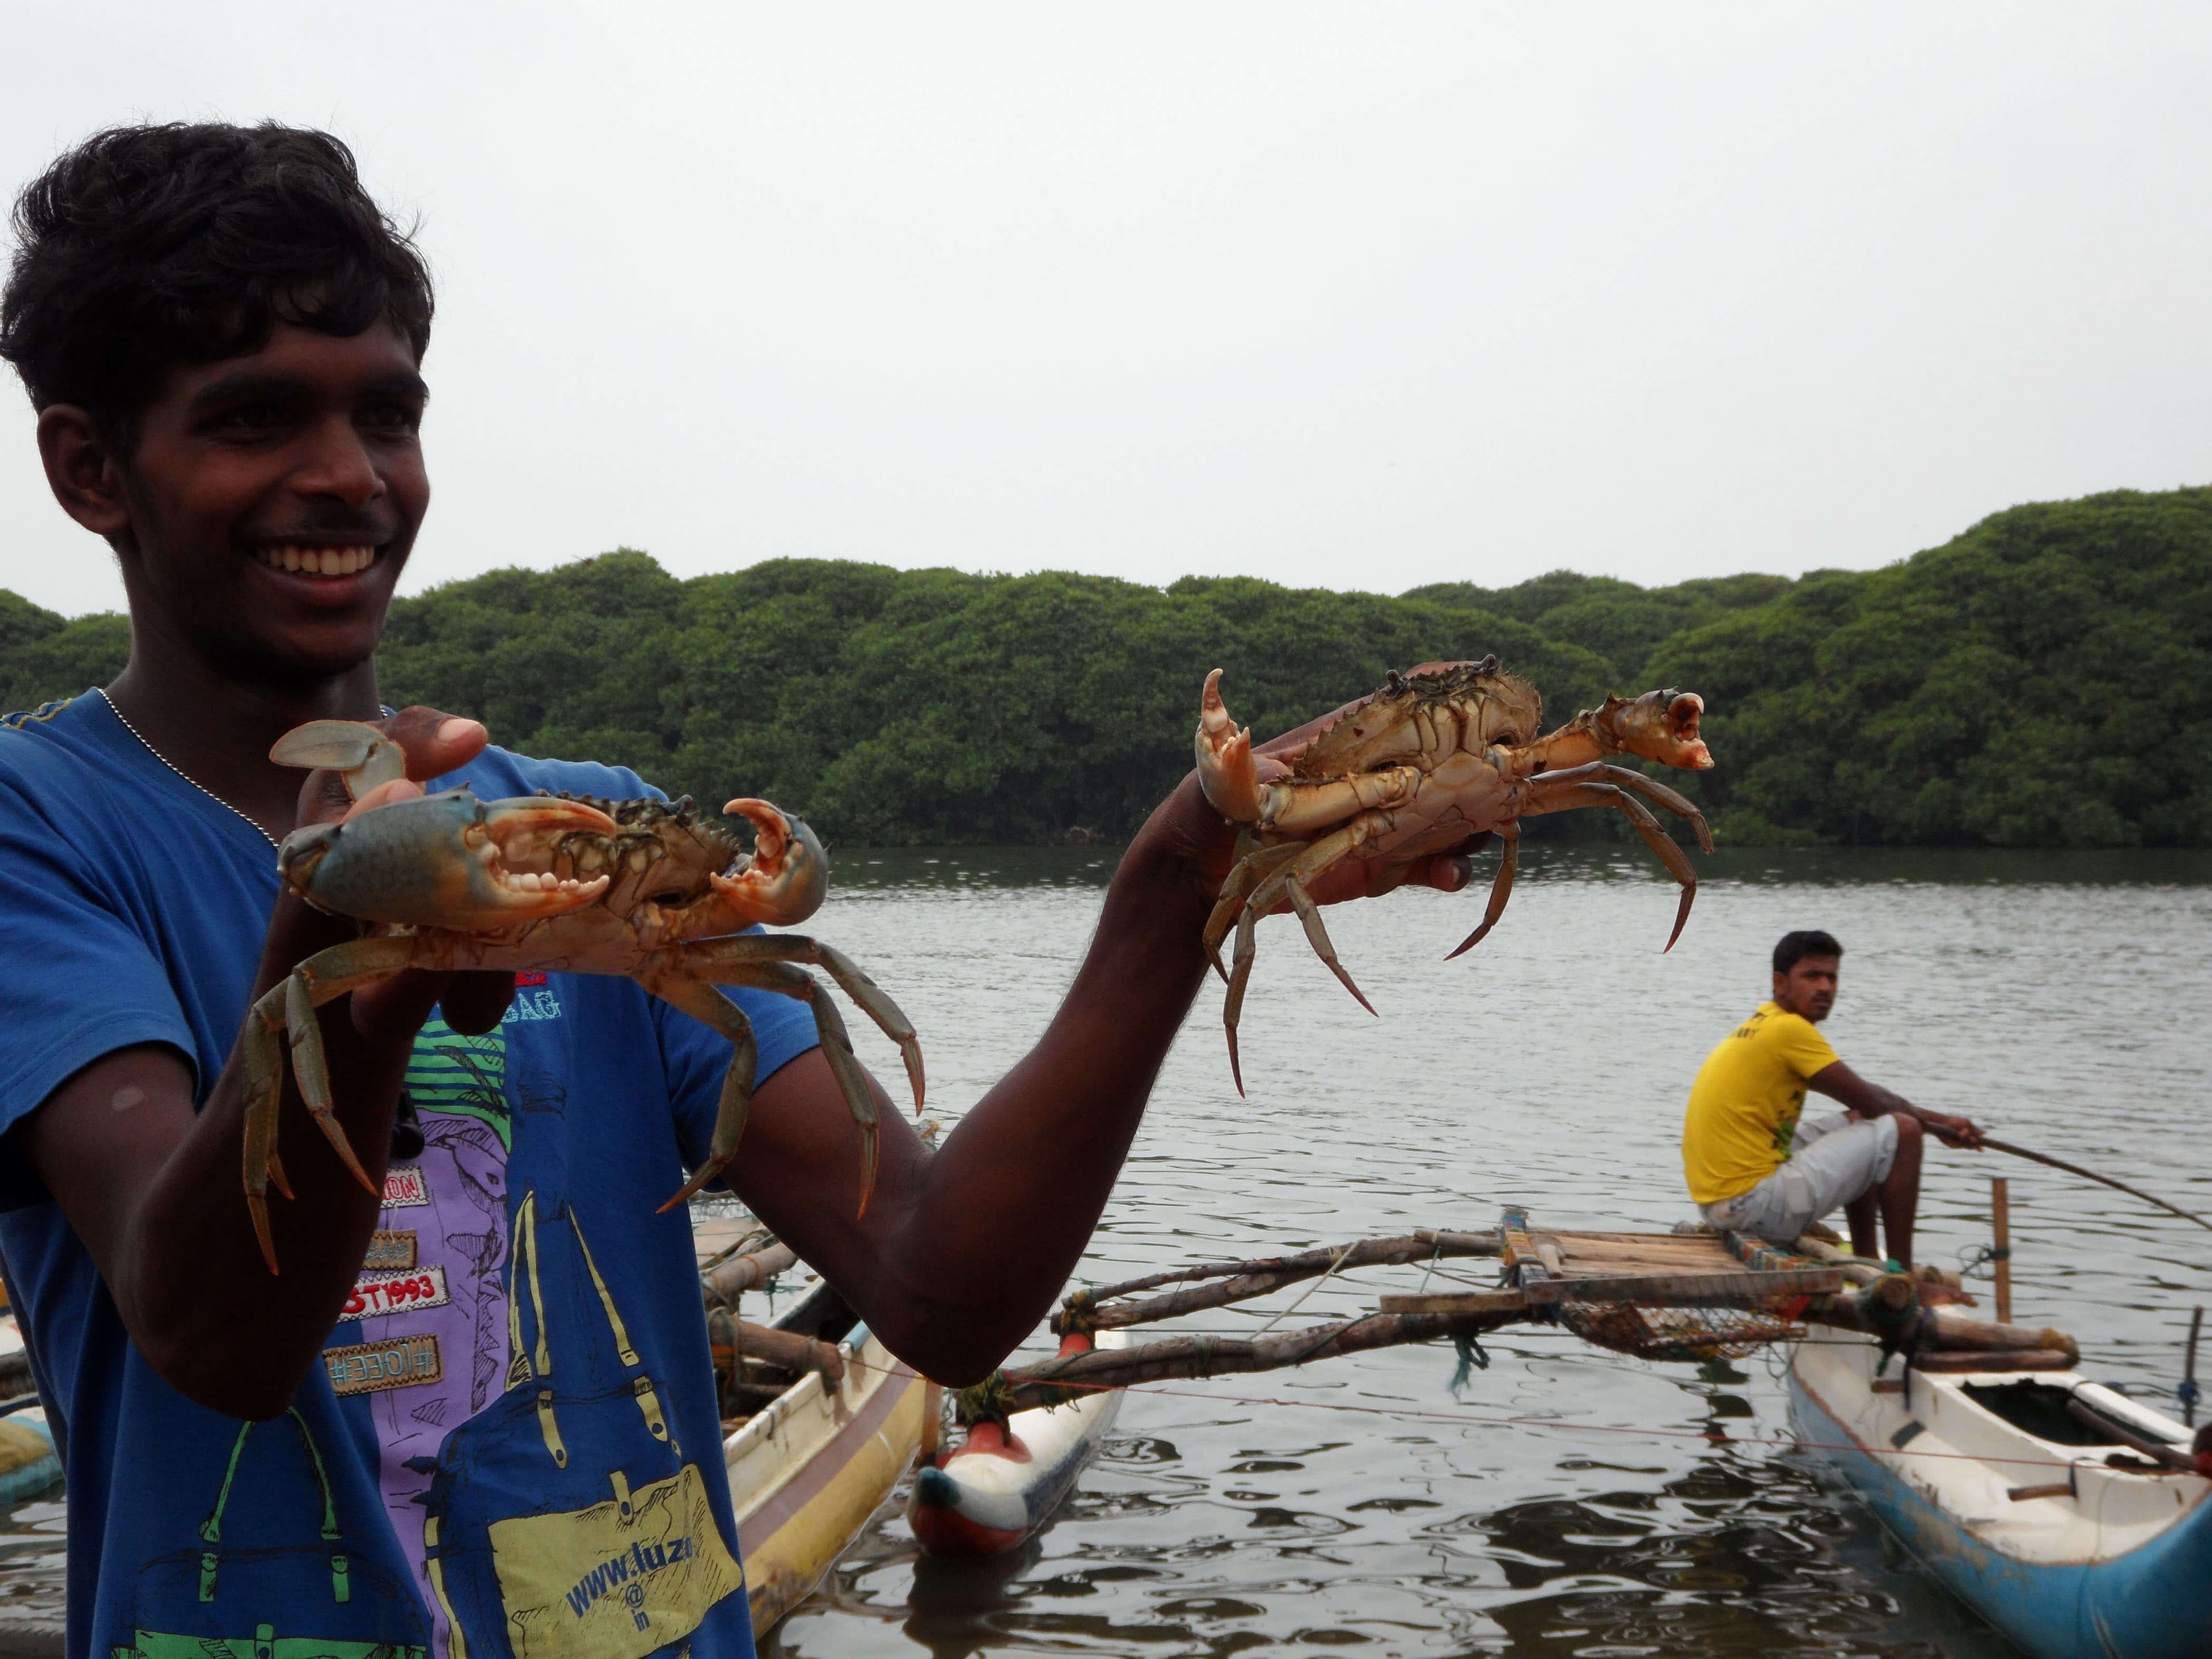 Eine Szene des Fangens von Krabben im Bentota-Fluss, die Vielfalt verbreitet haben